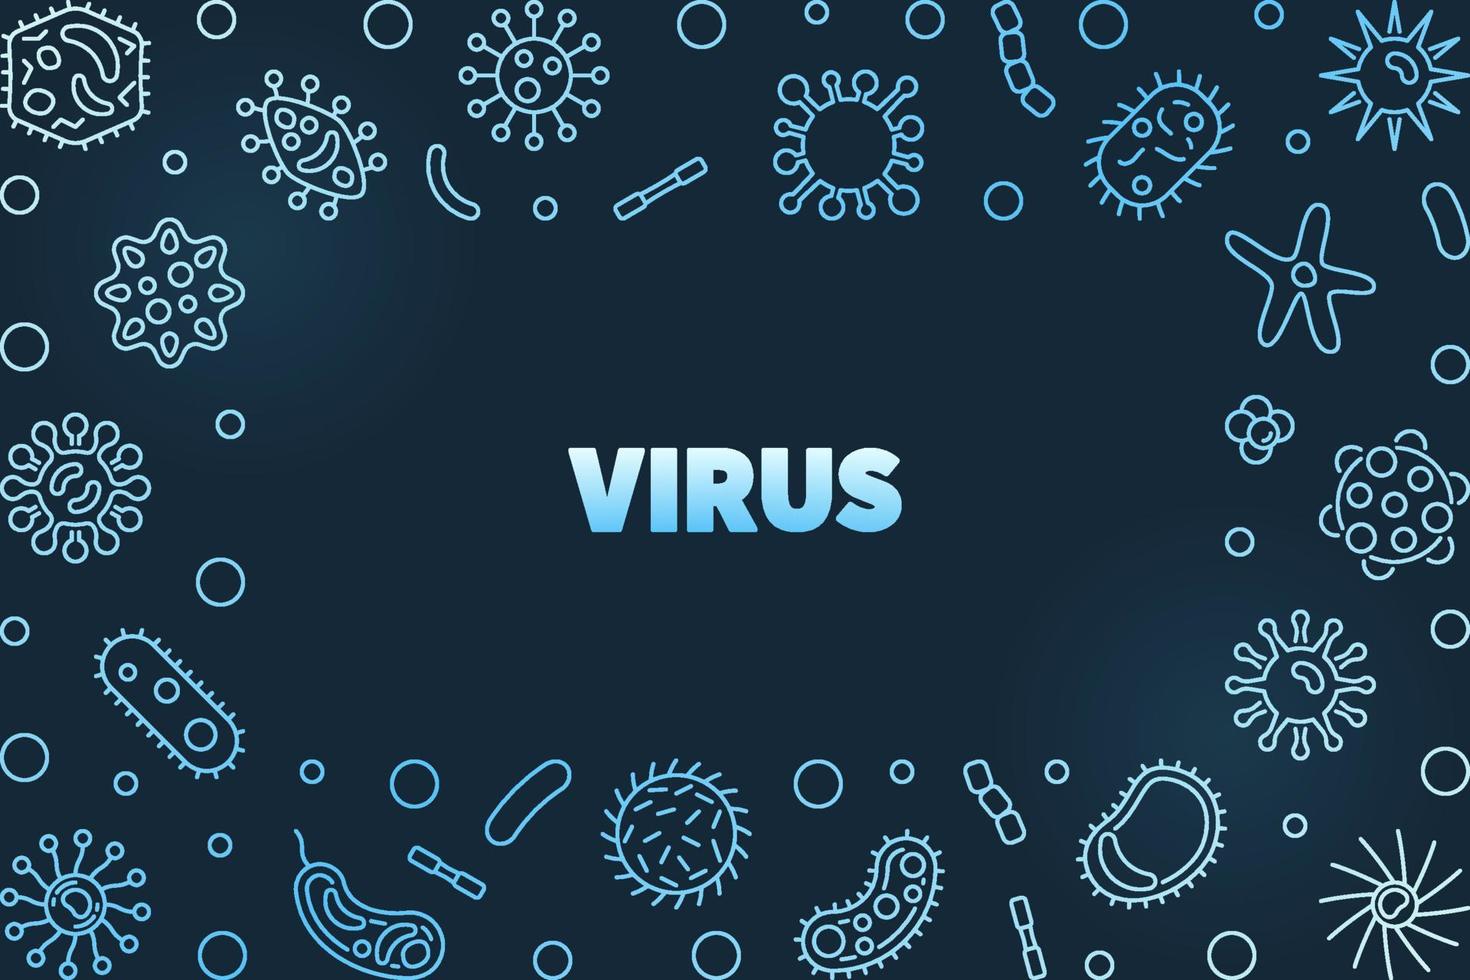 Vector Virus concept blue outline illustration or frame